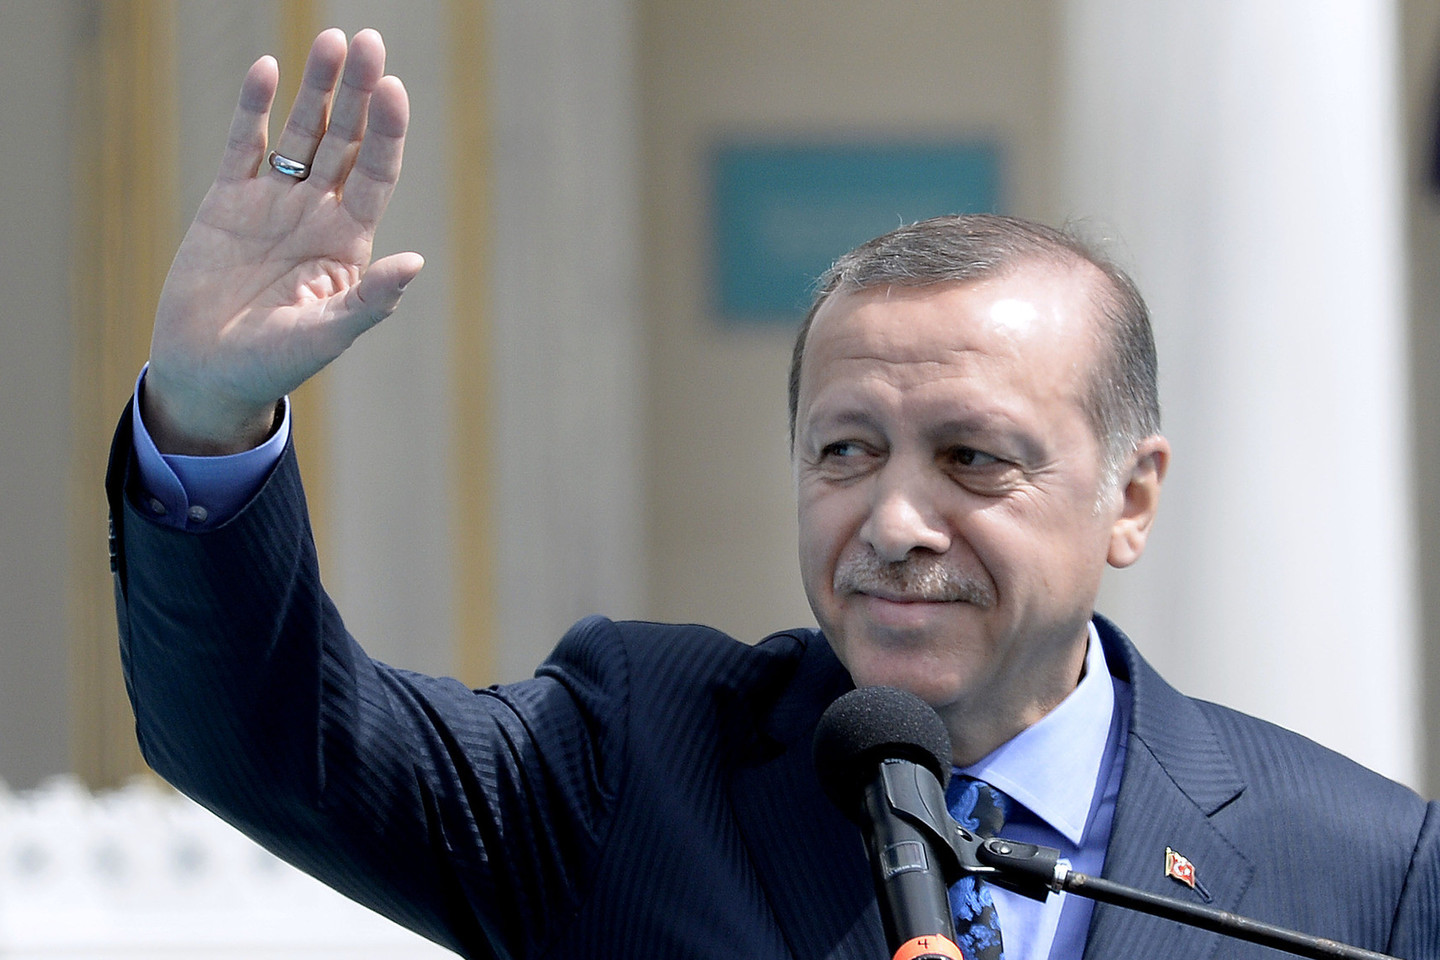 Turkijos prezidentas Recepas Tayyipas Erdoganas pirmadienį užsipuolė Vakarus dėl „demokratijos pamokų“ Turkijai, augant JAV ir ES kritikai dėl įtariamo turkų žiniakslaidos laisvių suvaržymo prezidento valdymo laikotarpiu.<br>AFP/ Scanpix nuotr.